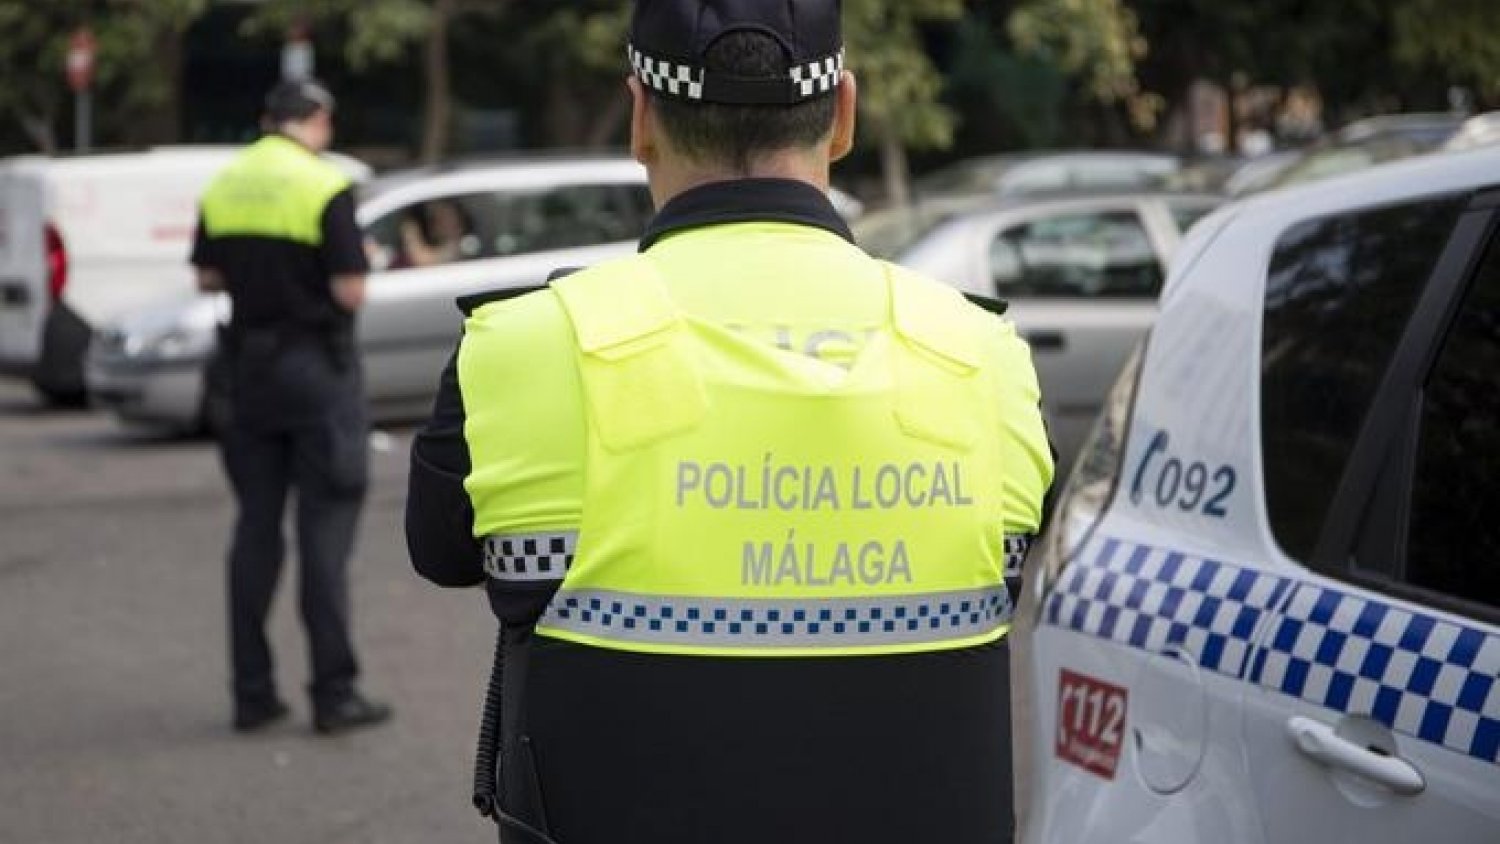 Policía Local denuncia a 44 personas en las últimas 24 horas por no usar mascarillas